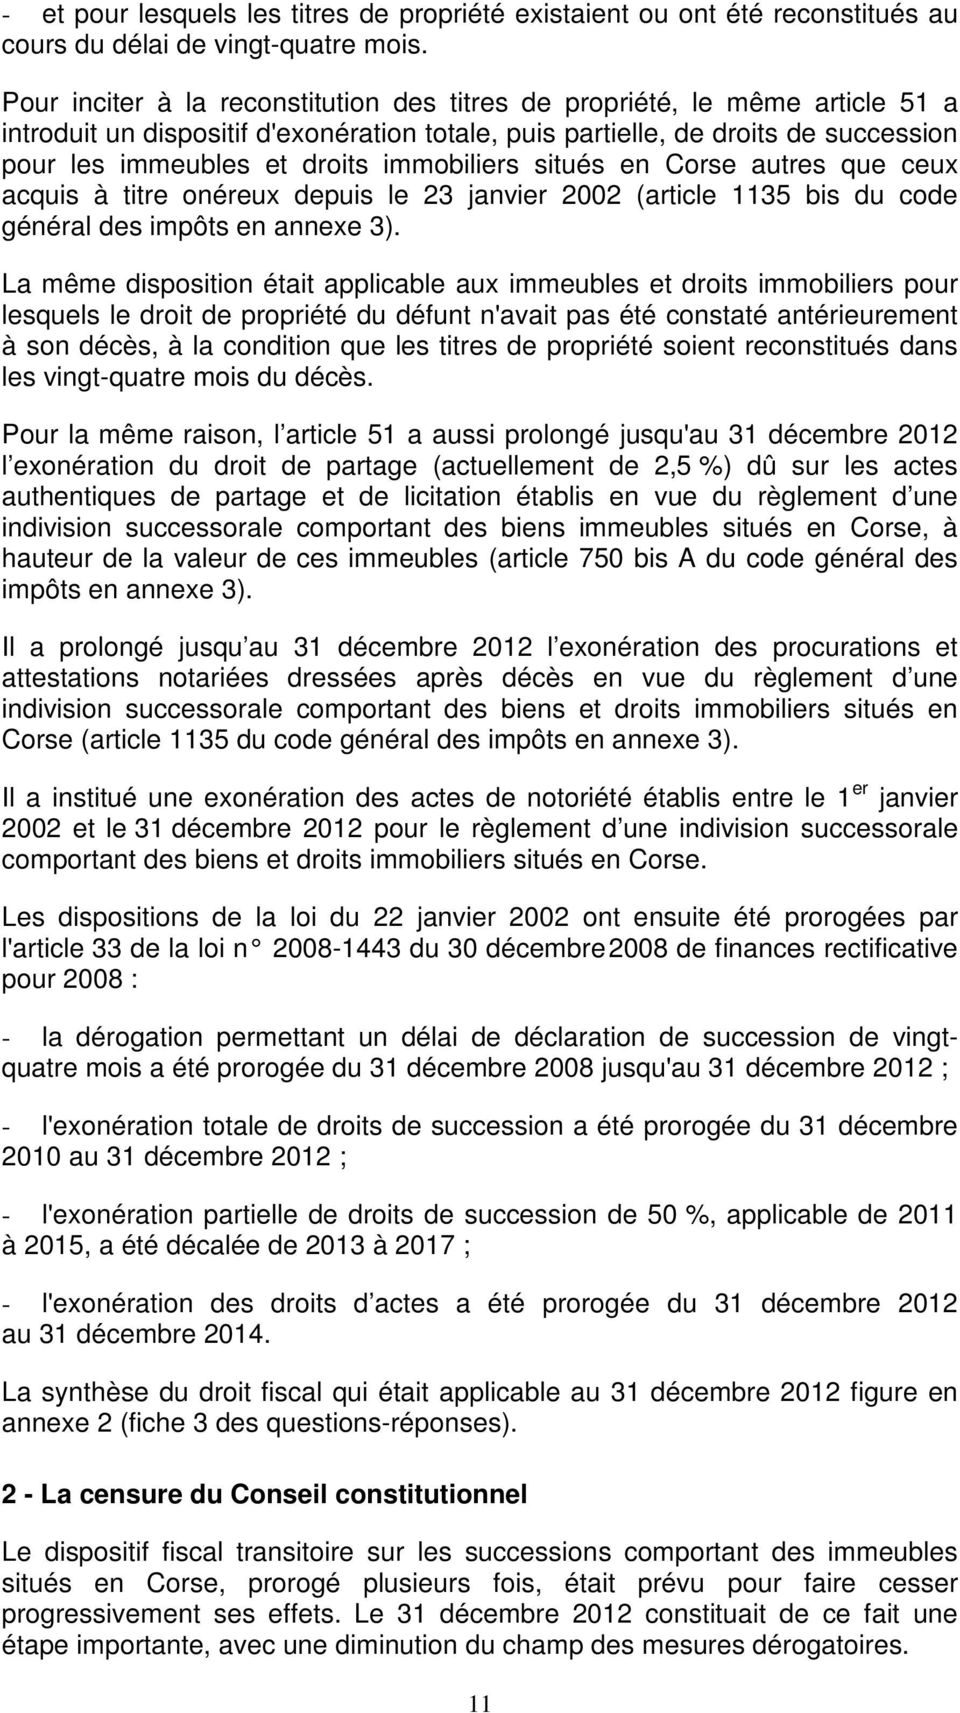 immobiliers situés en Corse autres que ceux acquis à titre onéreux depuis le 23 janvier 2002 (article 1135 bis du code général des impôts en annexe 3).